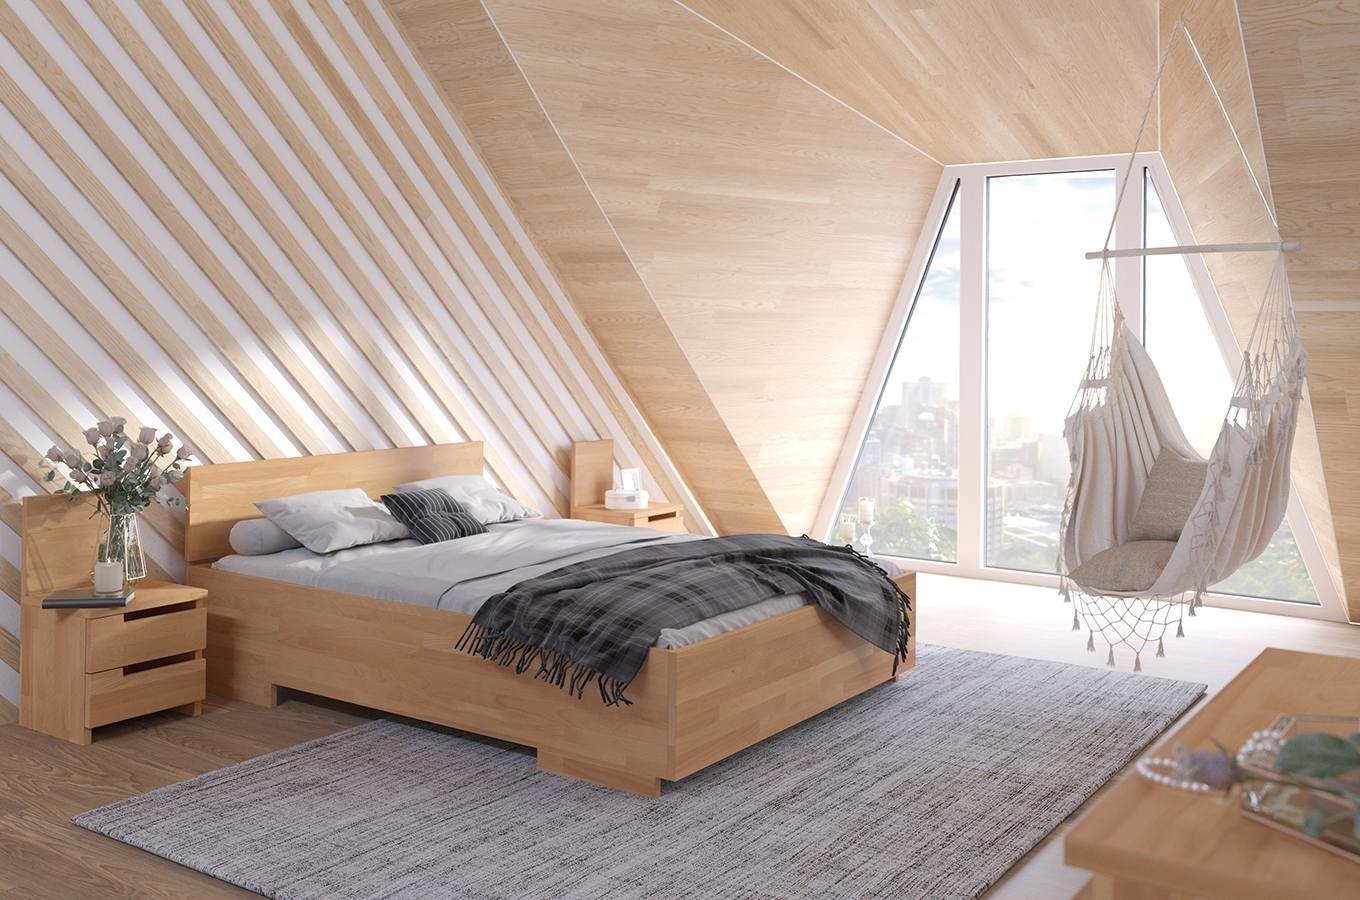 Łóżko drewniane bukowe Visby Bergman High&Long